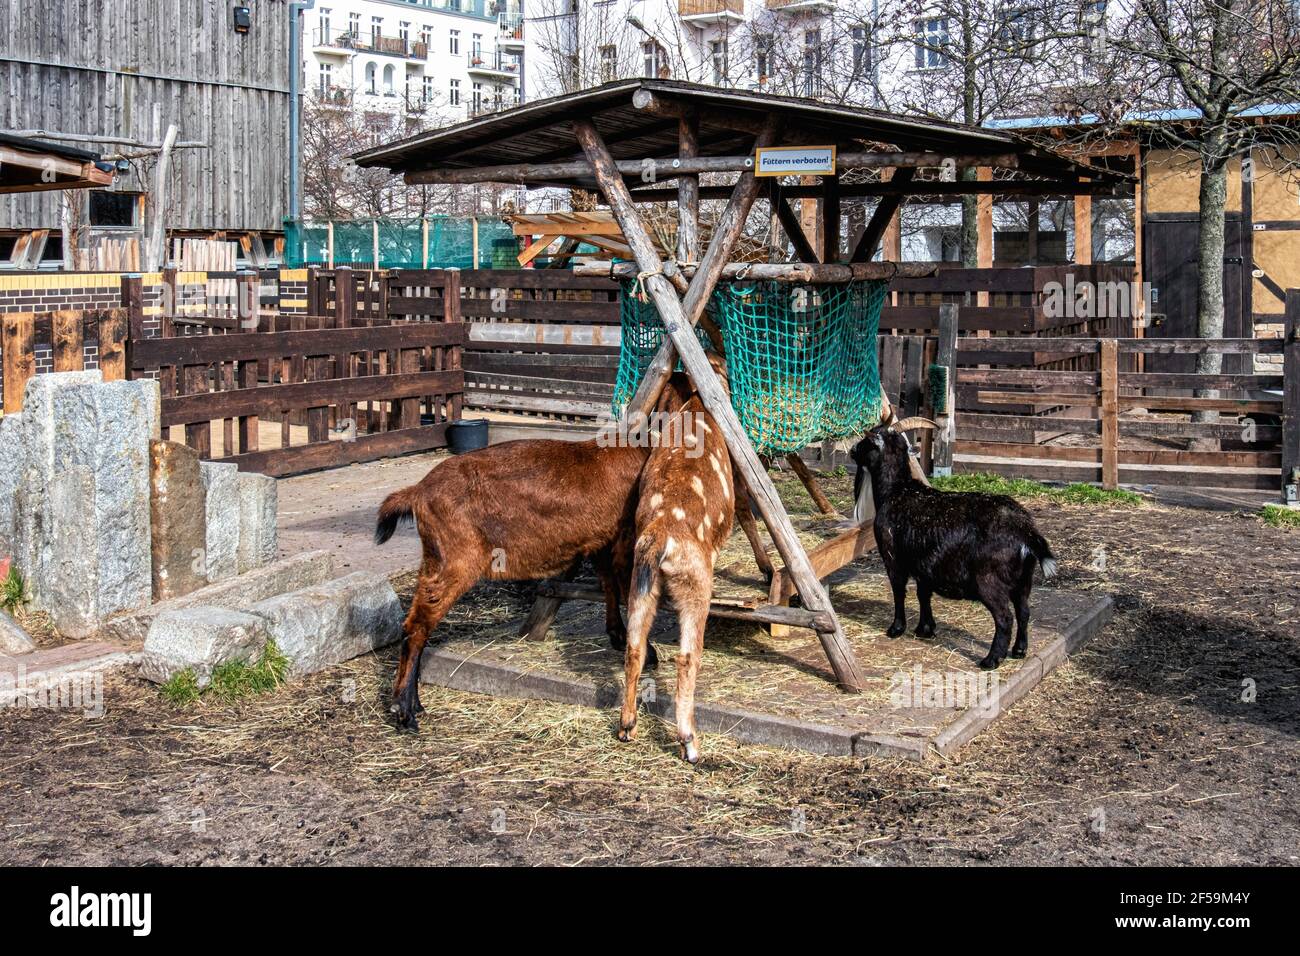 Jugendfarm Moritzhof. Les chèvres à la ferme des jeunes enseigne l'agriculture, l'horticulture et les vieux métiers. 90, Berlin, Allemagne Banque D'Images